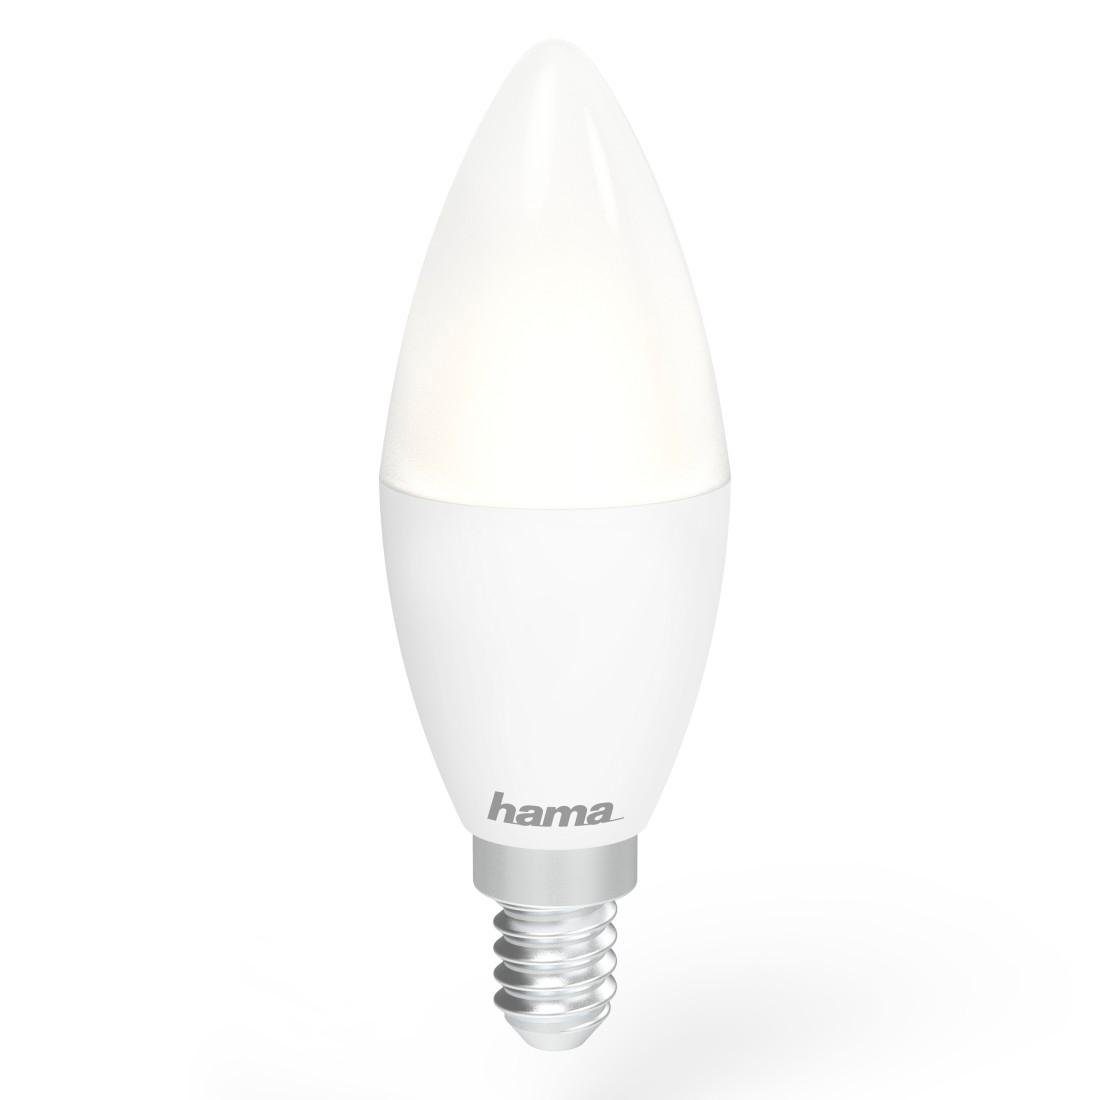 Hama Smarte LED-Leuchte Smarte wechselbar, Warmweiß Hub E14 Kerze Typ ohne LED 5,5W, 6500K LED - 2700K Tageslichtweiß, Glühbirne